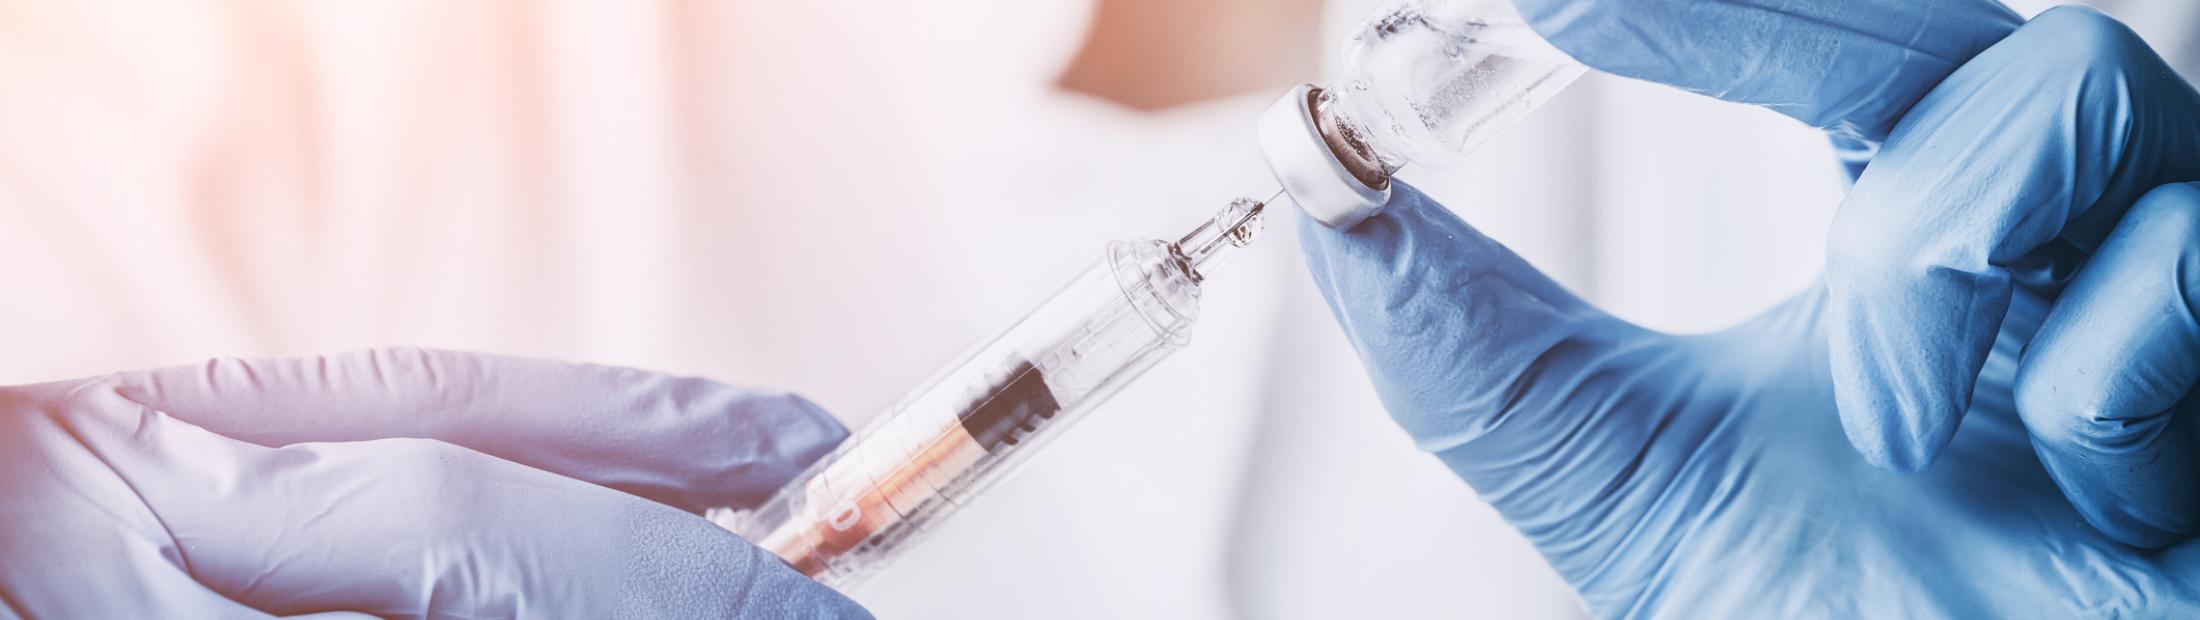 ¿Qué son las vacunas y por qué son fundamentales para nuestra salud?